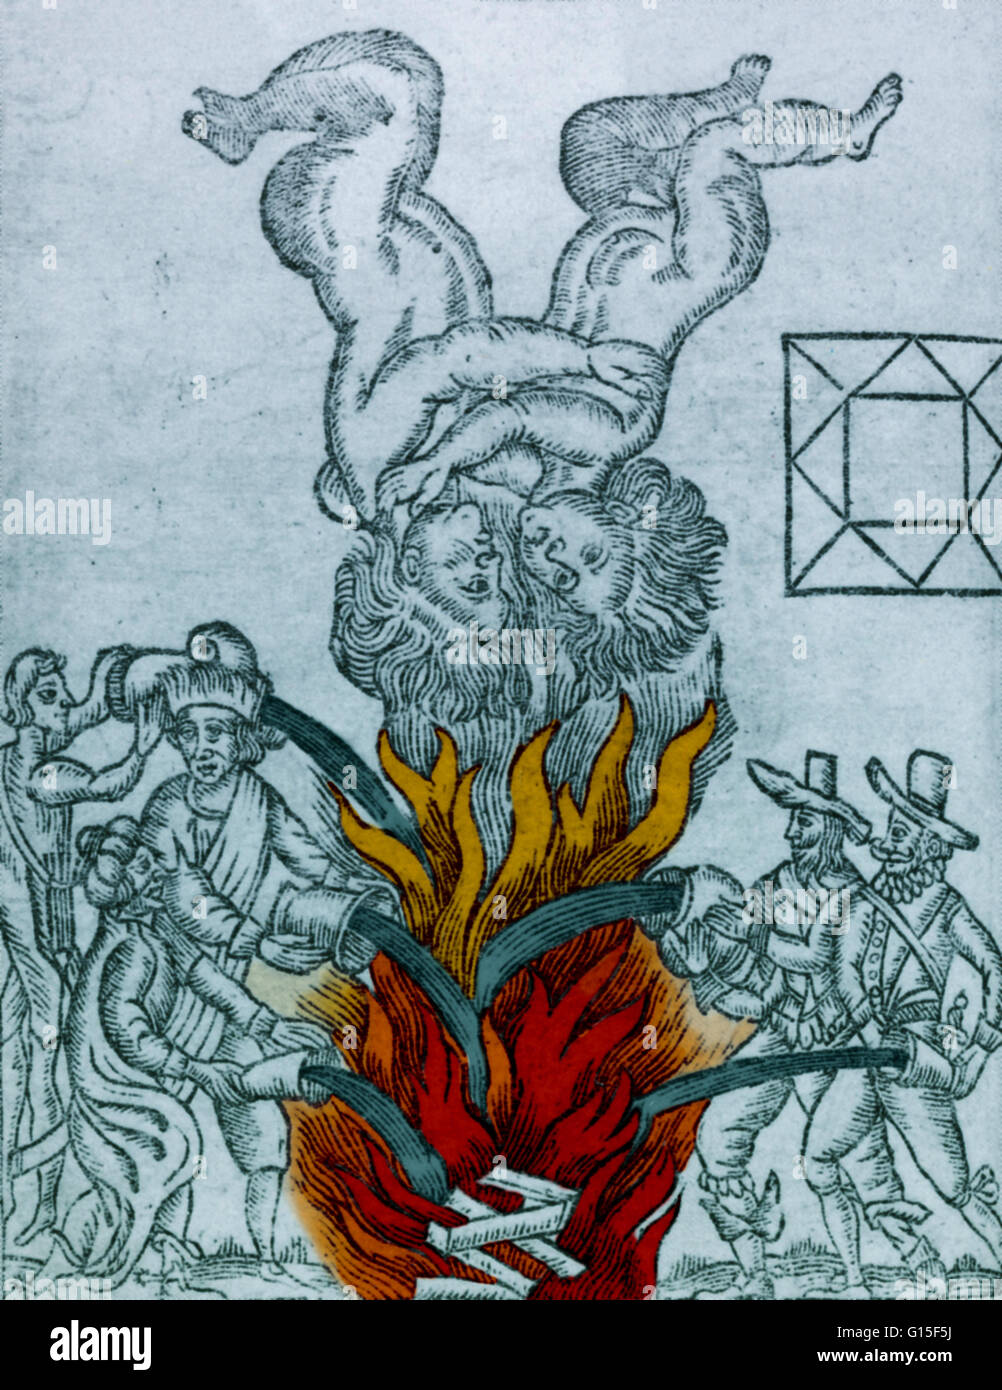 Il Grande Incendio di Londra, 1666. La catastrofe si è verificata durante la Gemini il mese, qui rappresentata in una retromarcia e aspetto negativo. Il Grande Incendio di Londra del settembre 1666 è stato uno dei più famosi episodi in Inghilterra Stuart. È stata la seconda tragedia Foto Stock